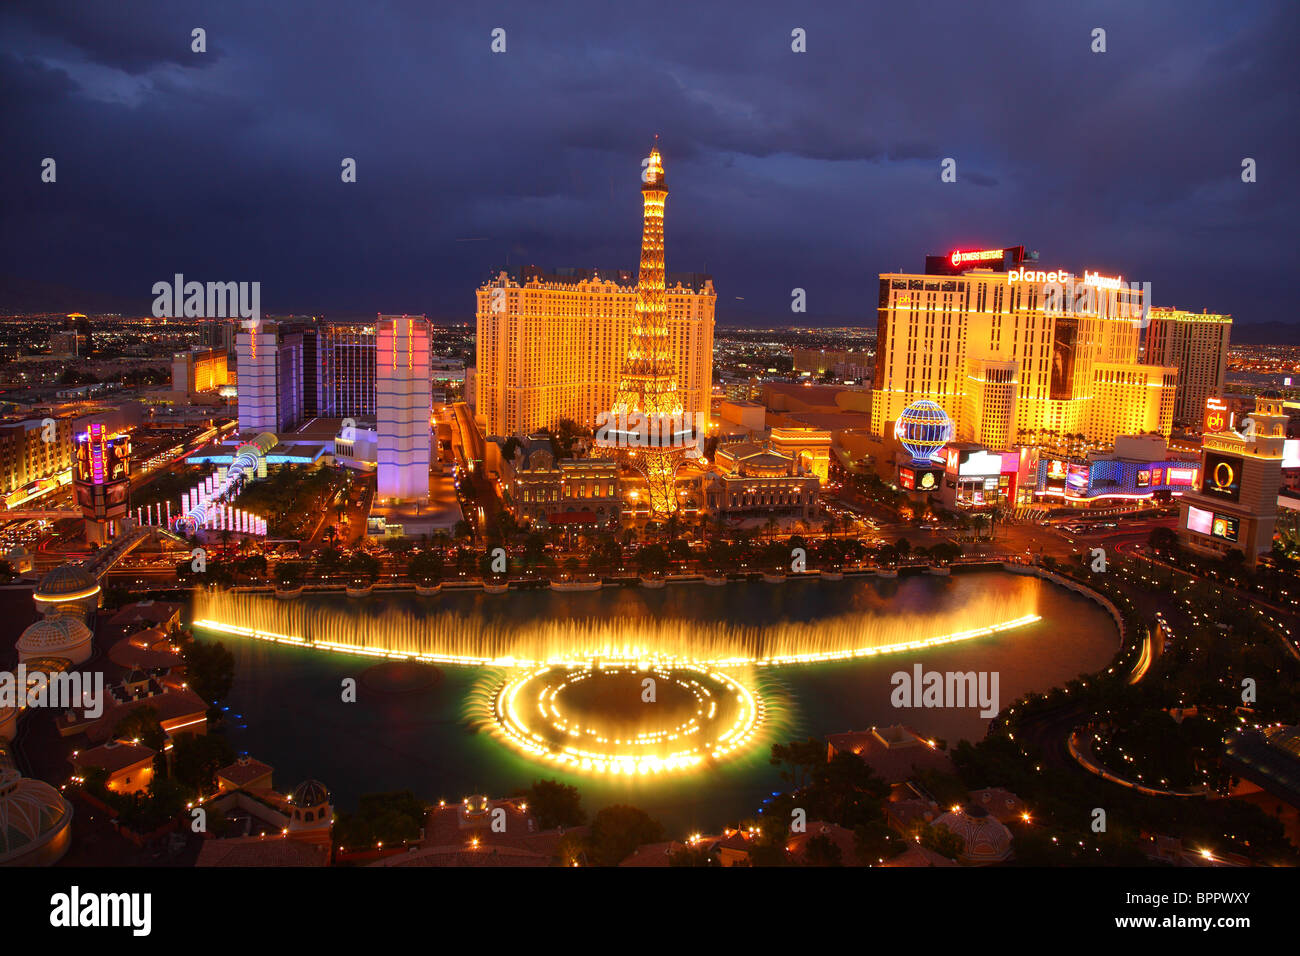 Vista de la fuente y Bellagio Hotel Paris de noche, Las Vegas Foto de stock